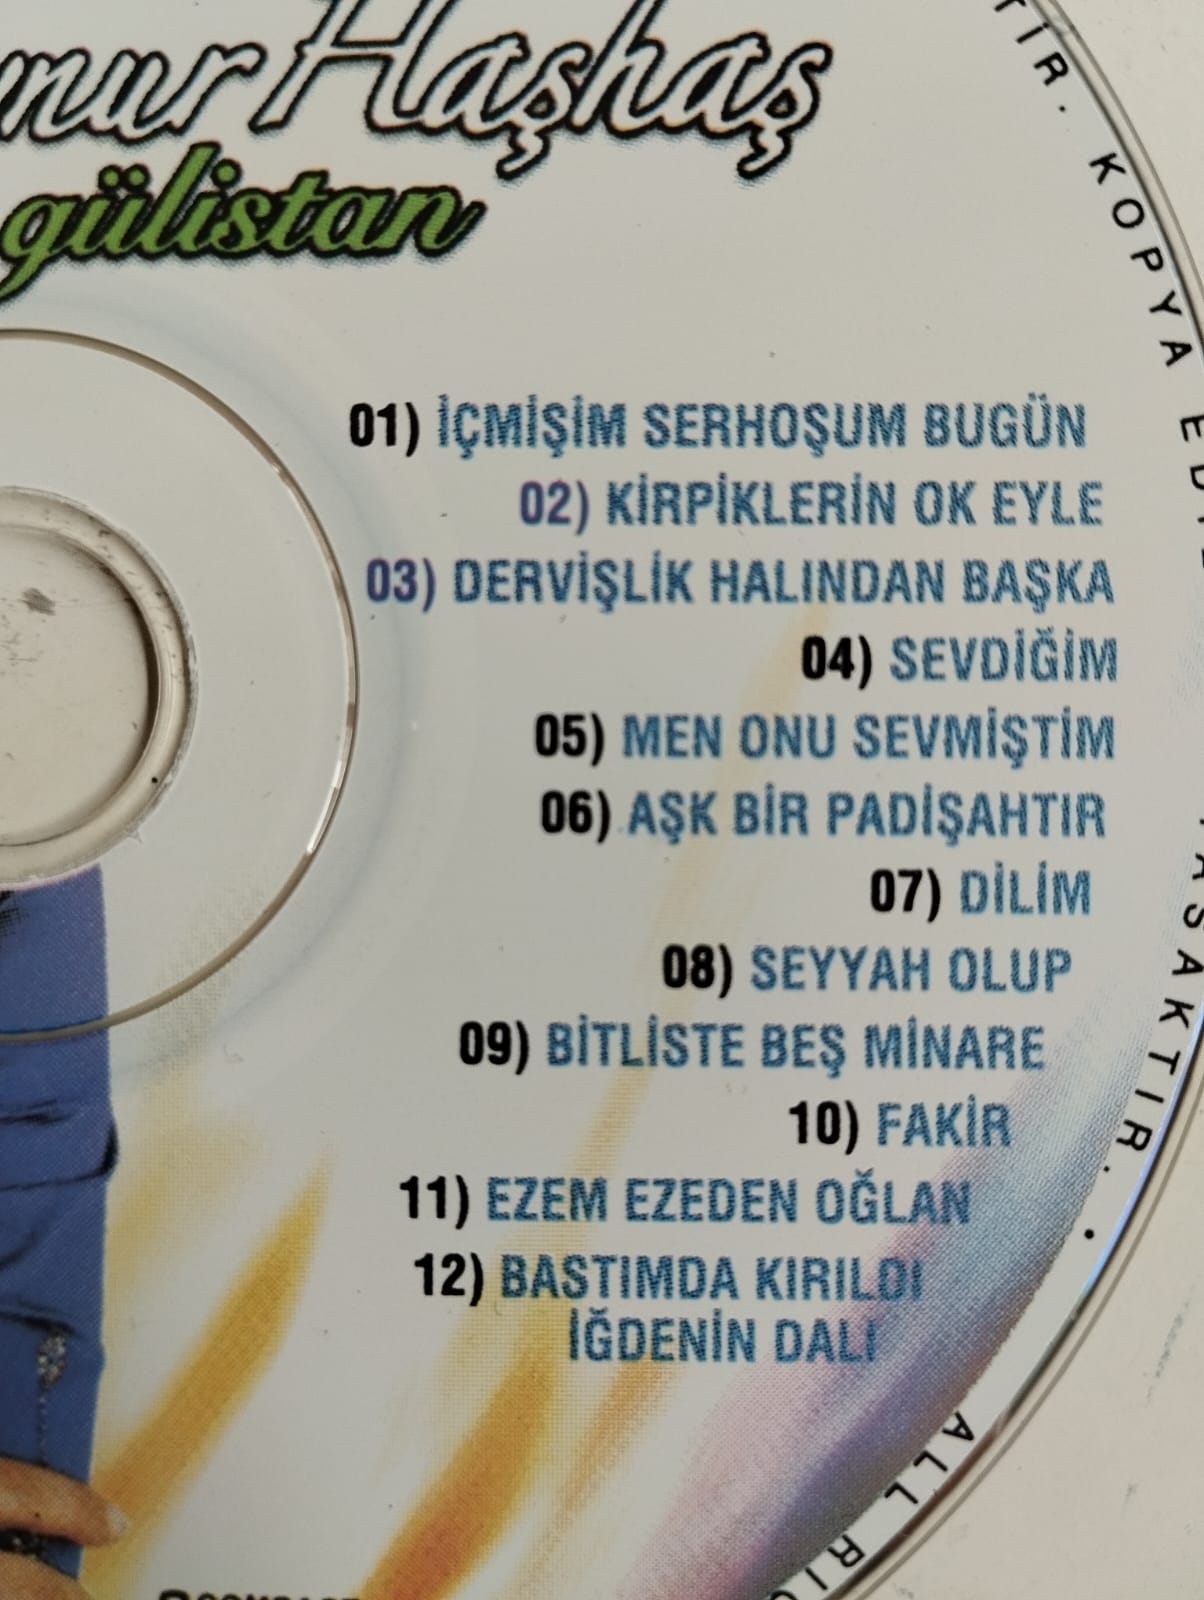 Aynur Haşhaş / Gülistan - Türkiye Basım - 2. El CD Albüm